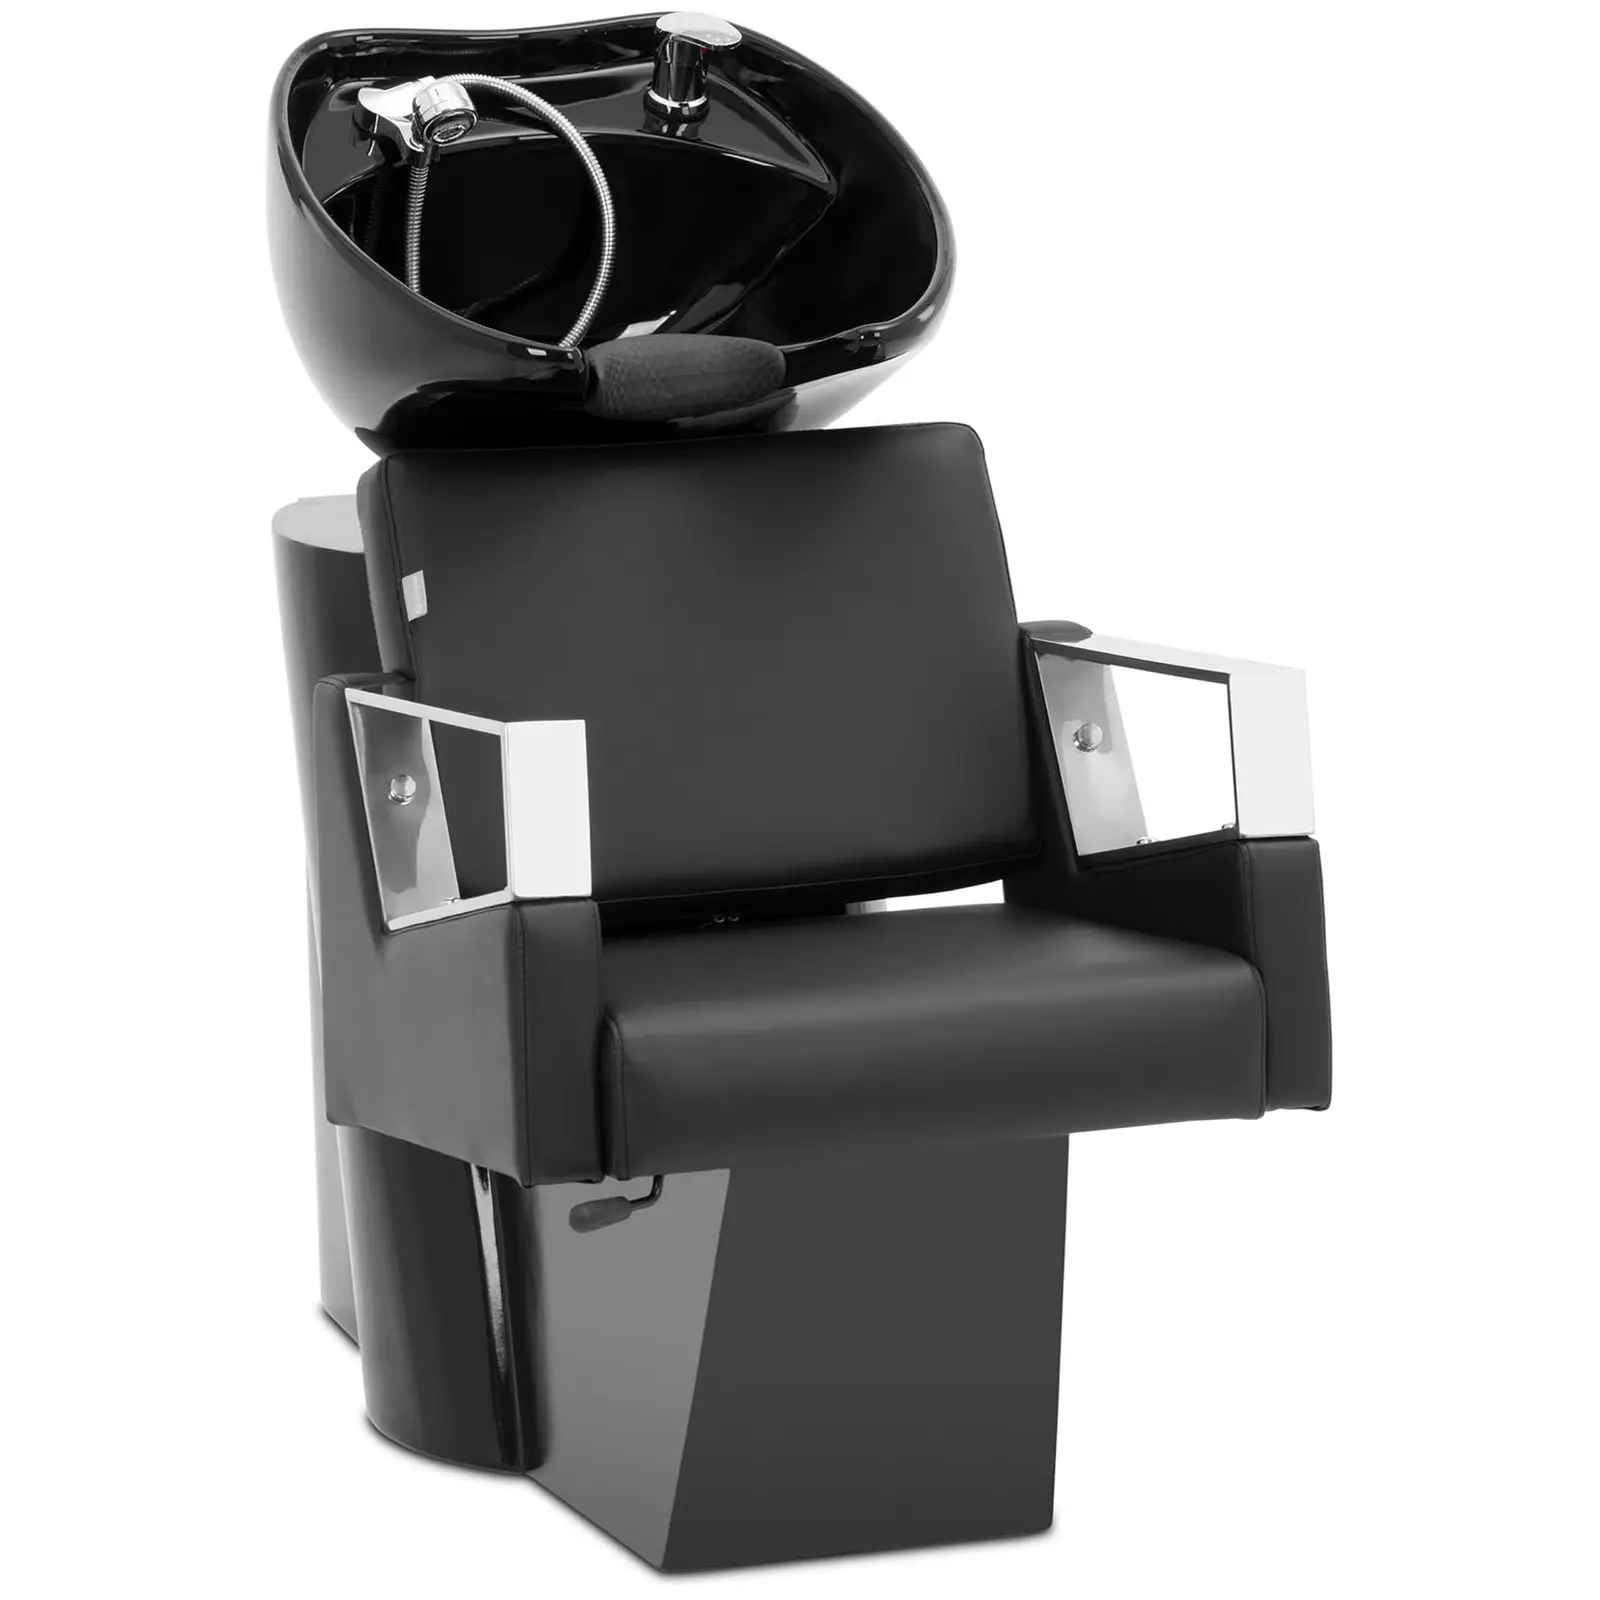 Frisørstol med vask - skrånende servant med blandebatteri, slange og dusjhode - funksjonelt design